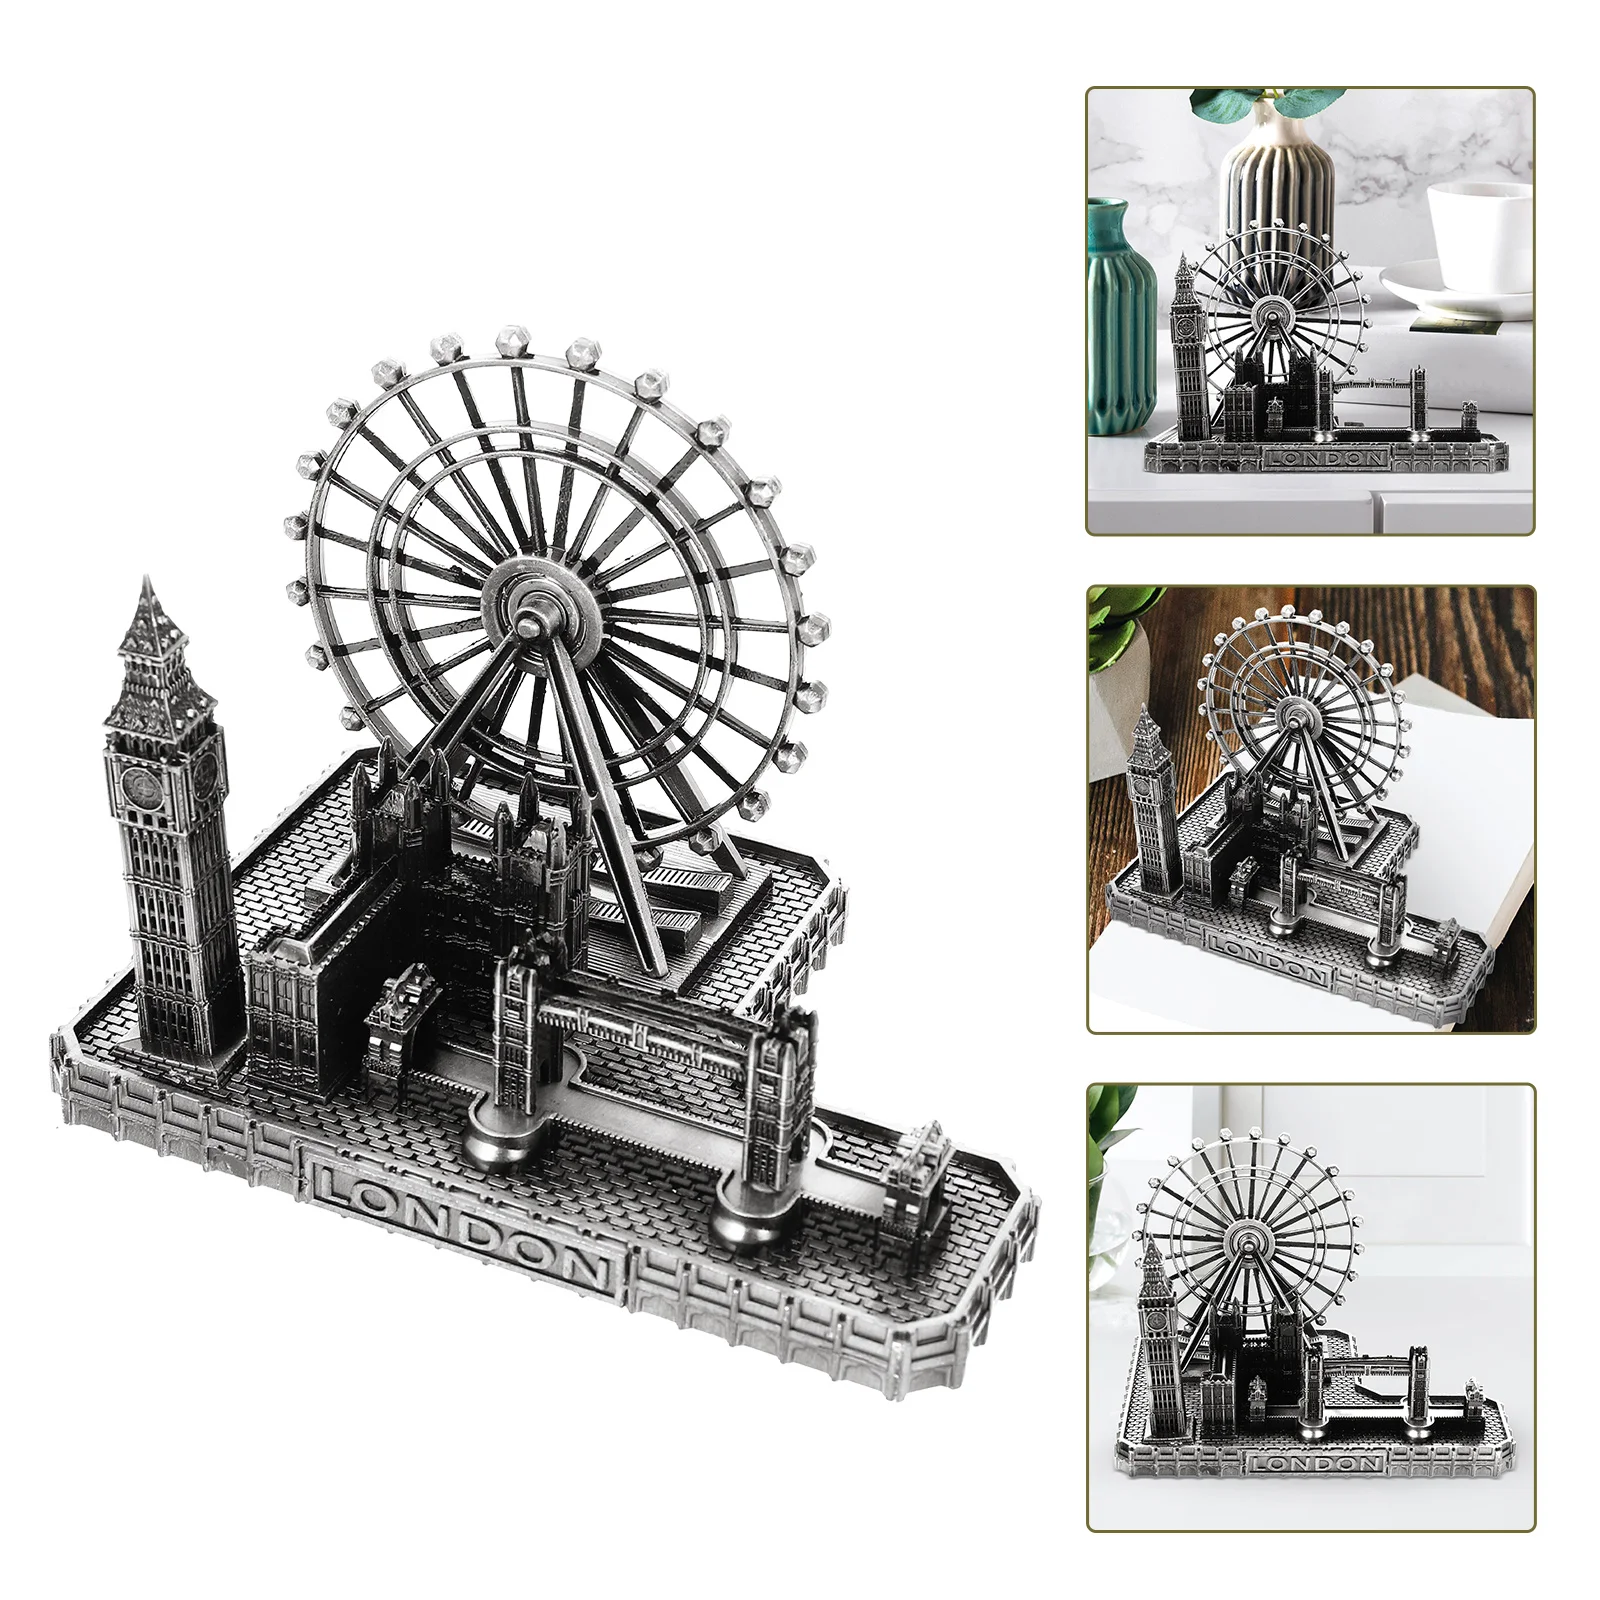 

Лондонская модель, башня, мост, город, Знаменитый Биг-Бен, здания, архитектура, статуэтка часов, британская фотография